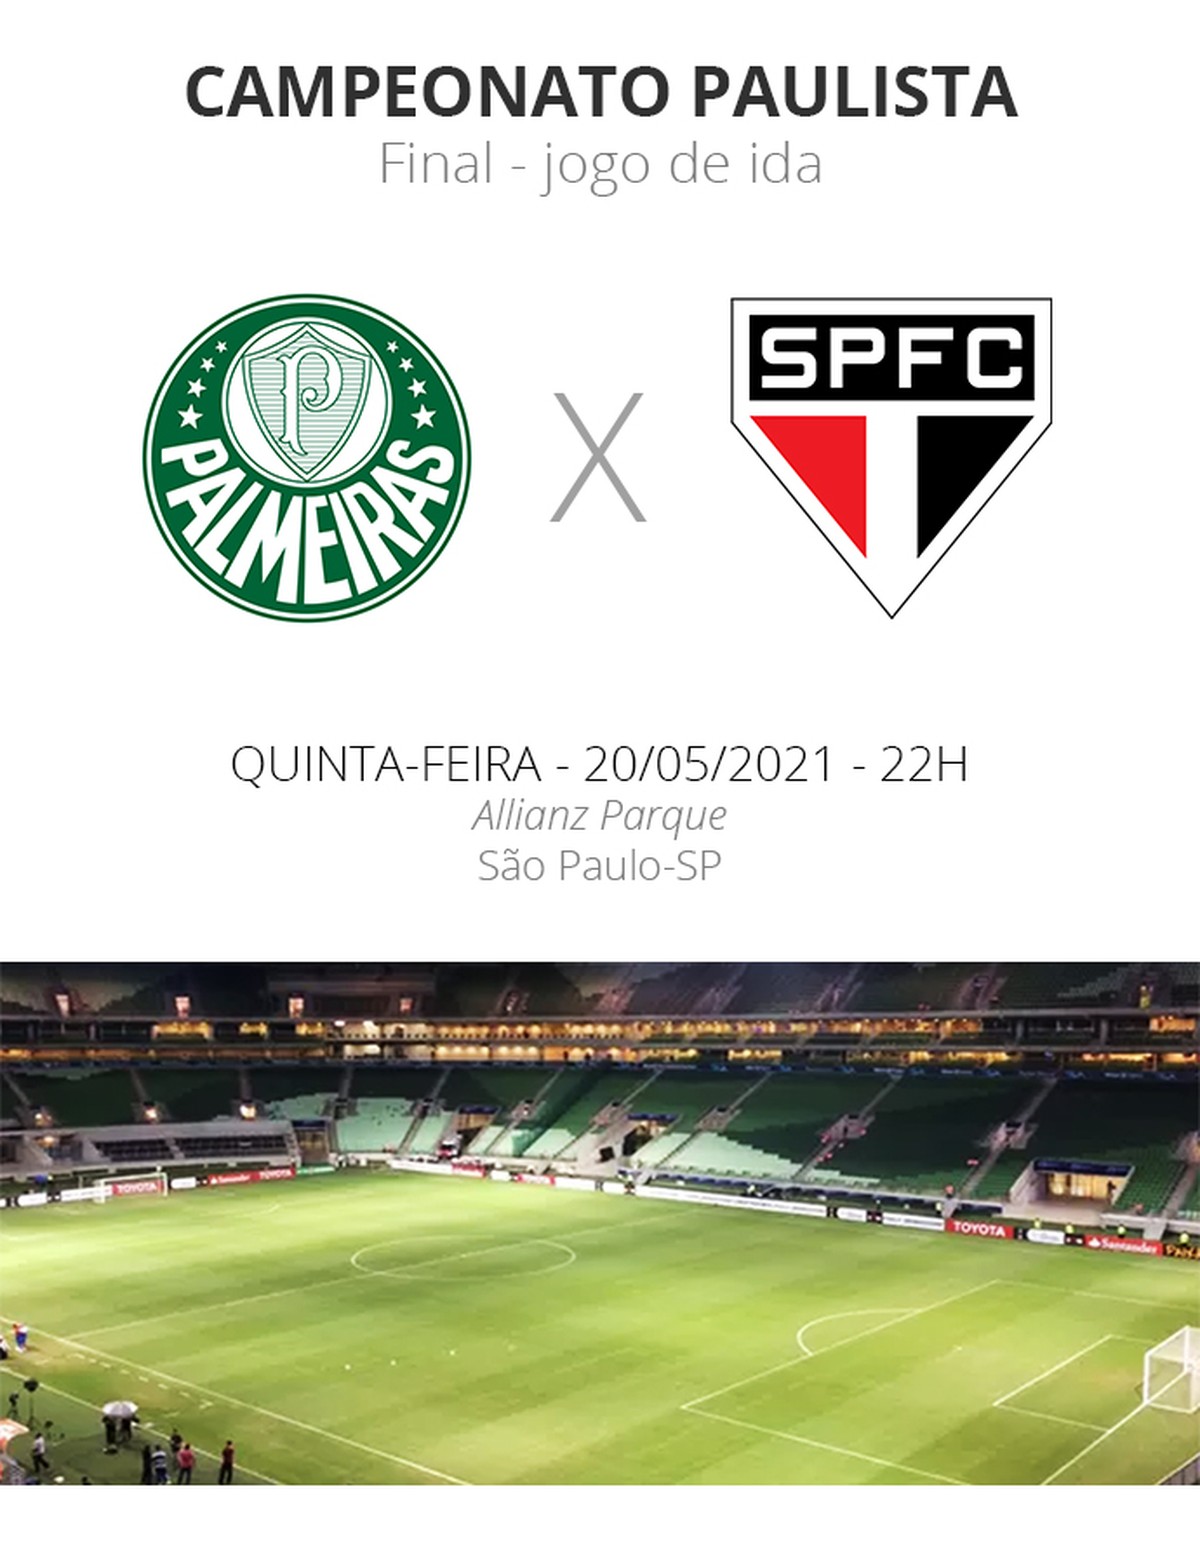 SÃO PAULO, SP - 10.07.2021: PALMEIRAS X SANTOS - Marinho during the game  between Palmeiras and Santos held at Allianz Parque in São Paulo, SP,  Brazil on July 10, 2021. The match